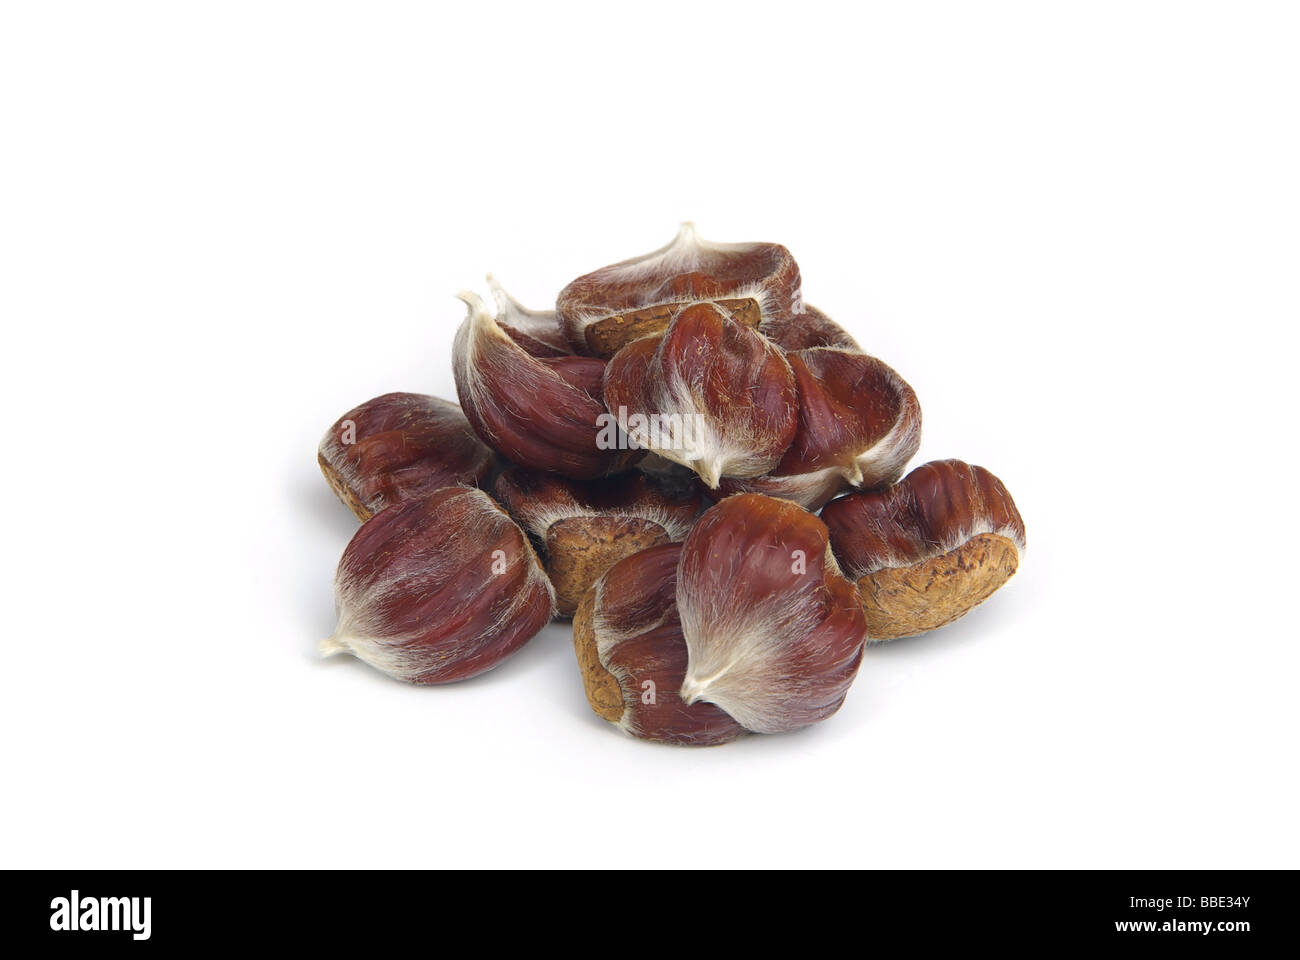 Esskastanie sweet chestnut 01 Foto Stock